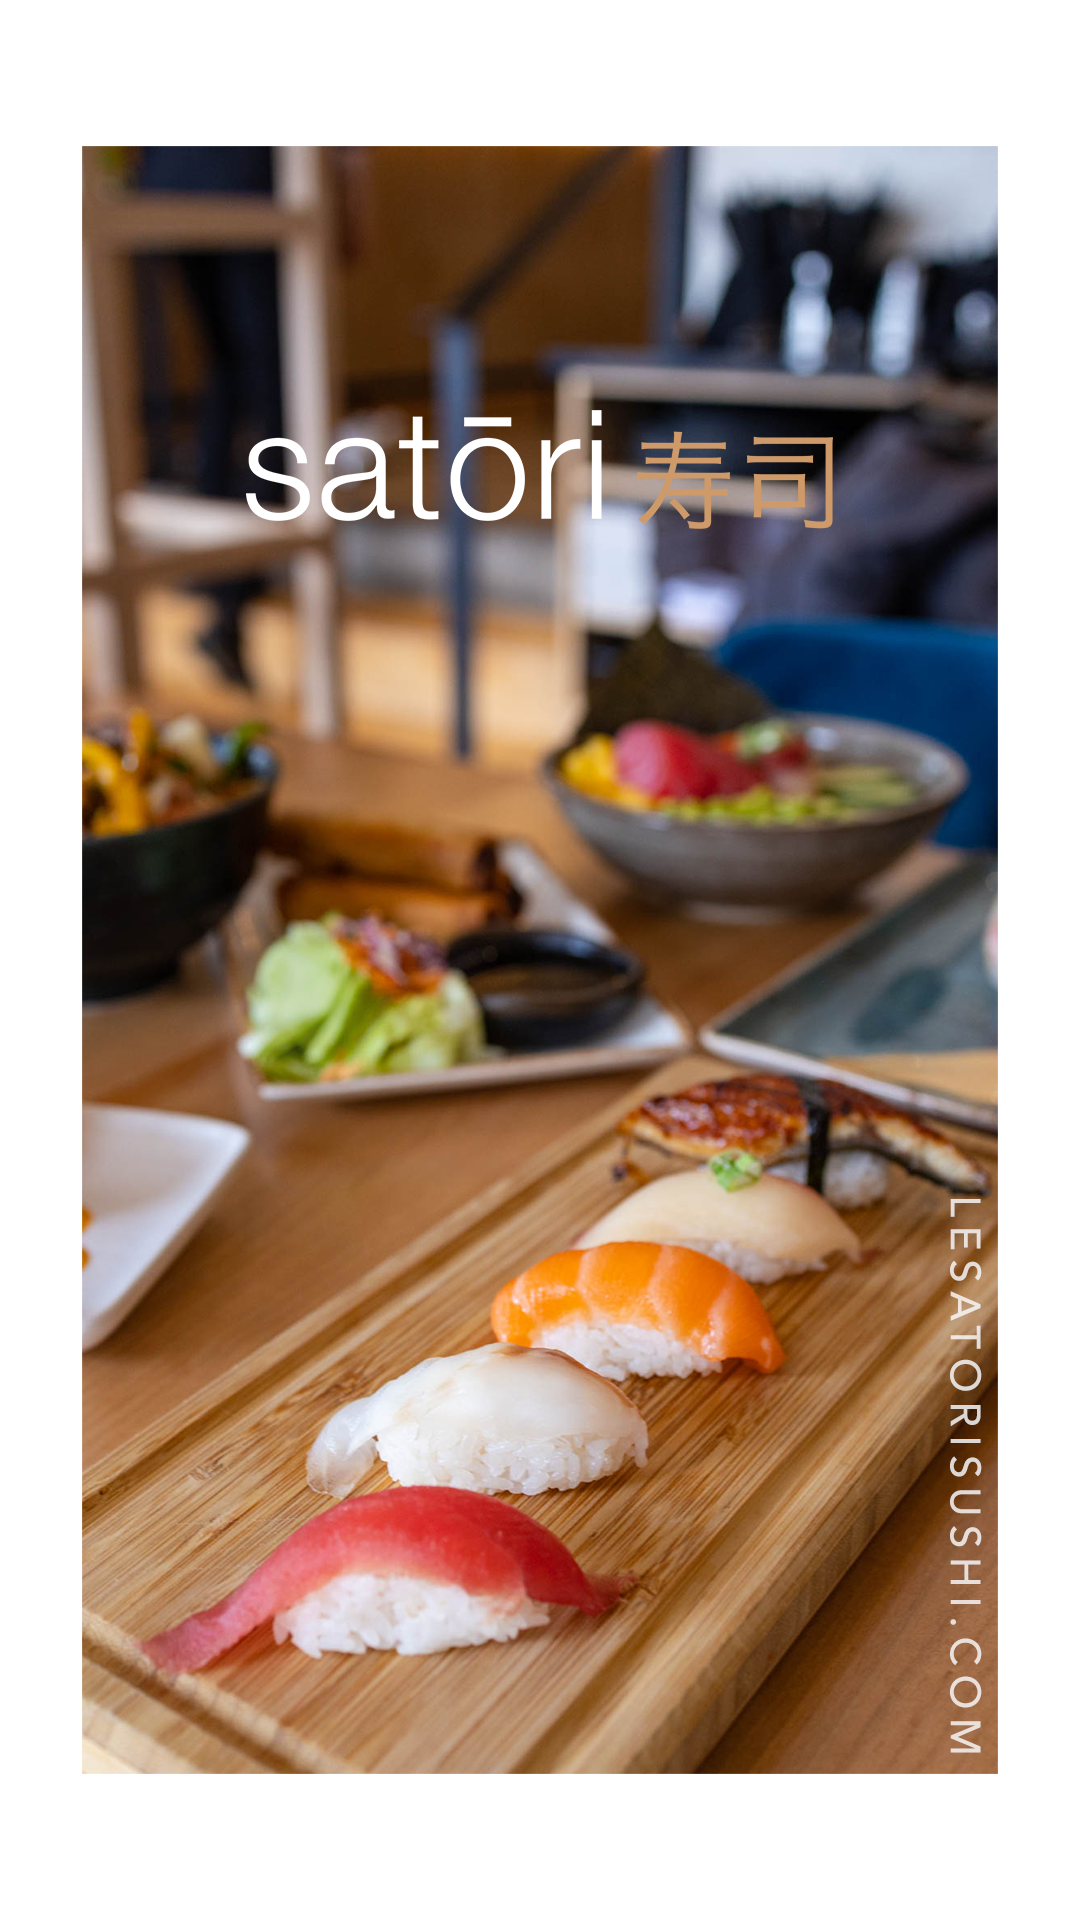 Satori sushi - Medias sociaux idylliq